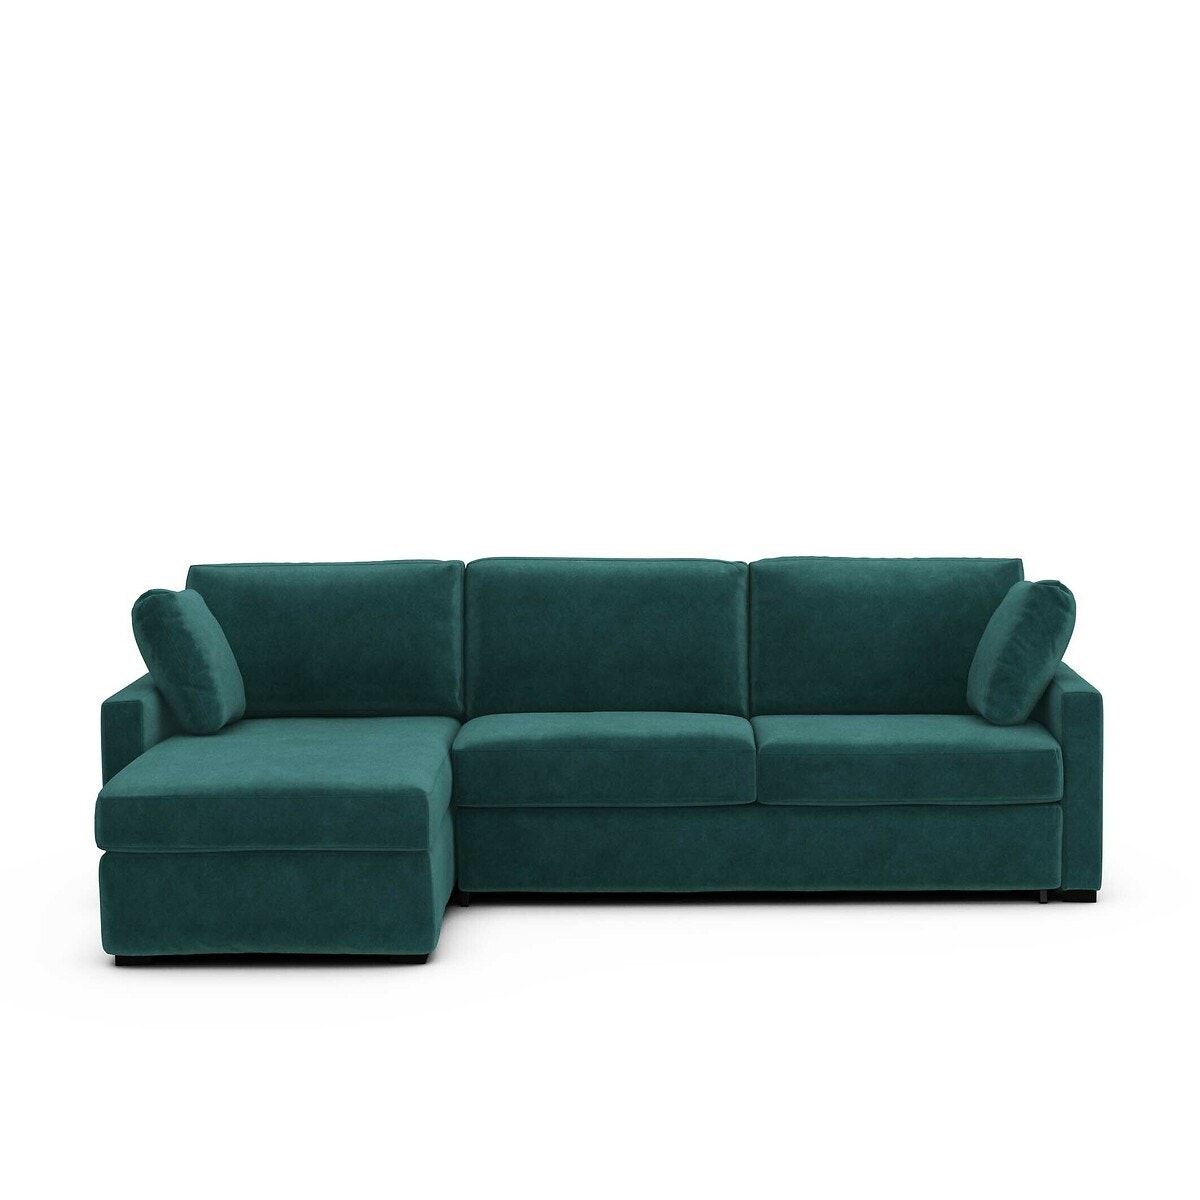 Σπίτι > Έπιπλα > Καθιστικό > Καναπέδες > Γωνιακοί καναπέδες Γωνιακός καναπές-κρεβάτι από βελούδο με στρώμα τεχνολογίας Bultex Μ160xΠ265xΥ85cm